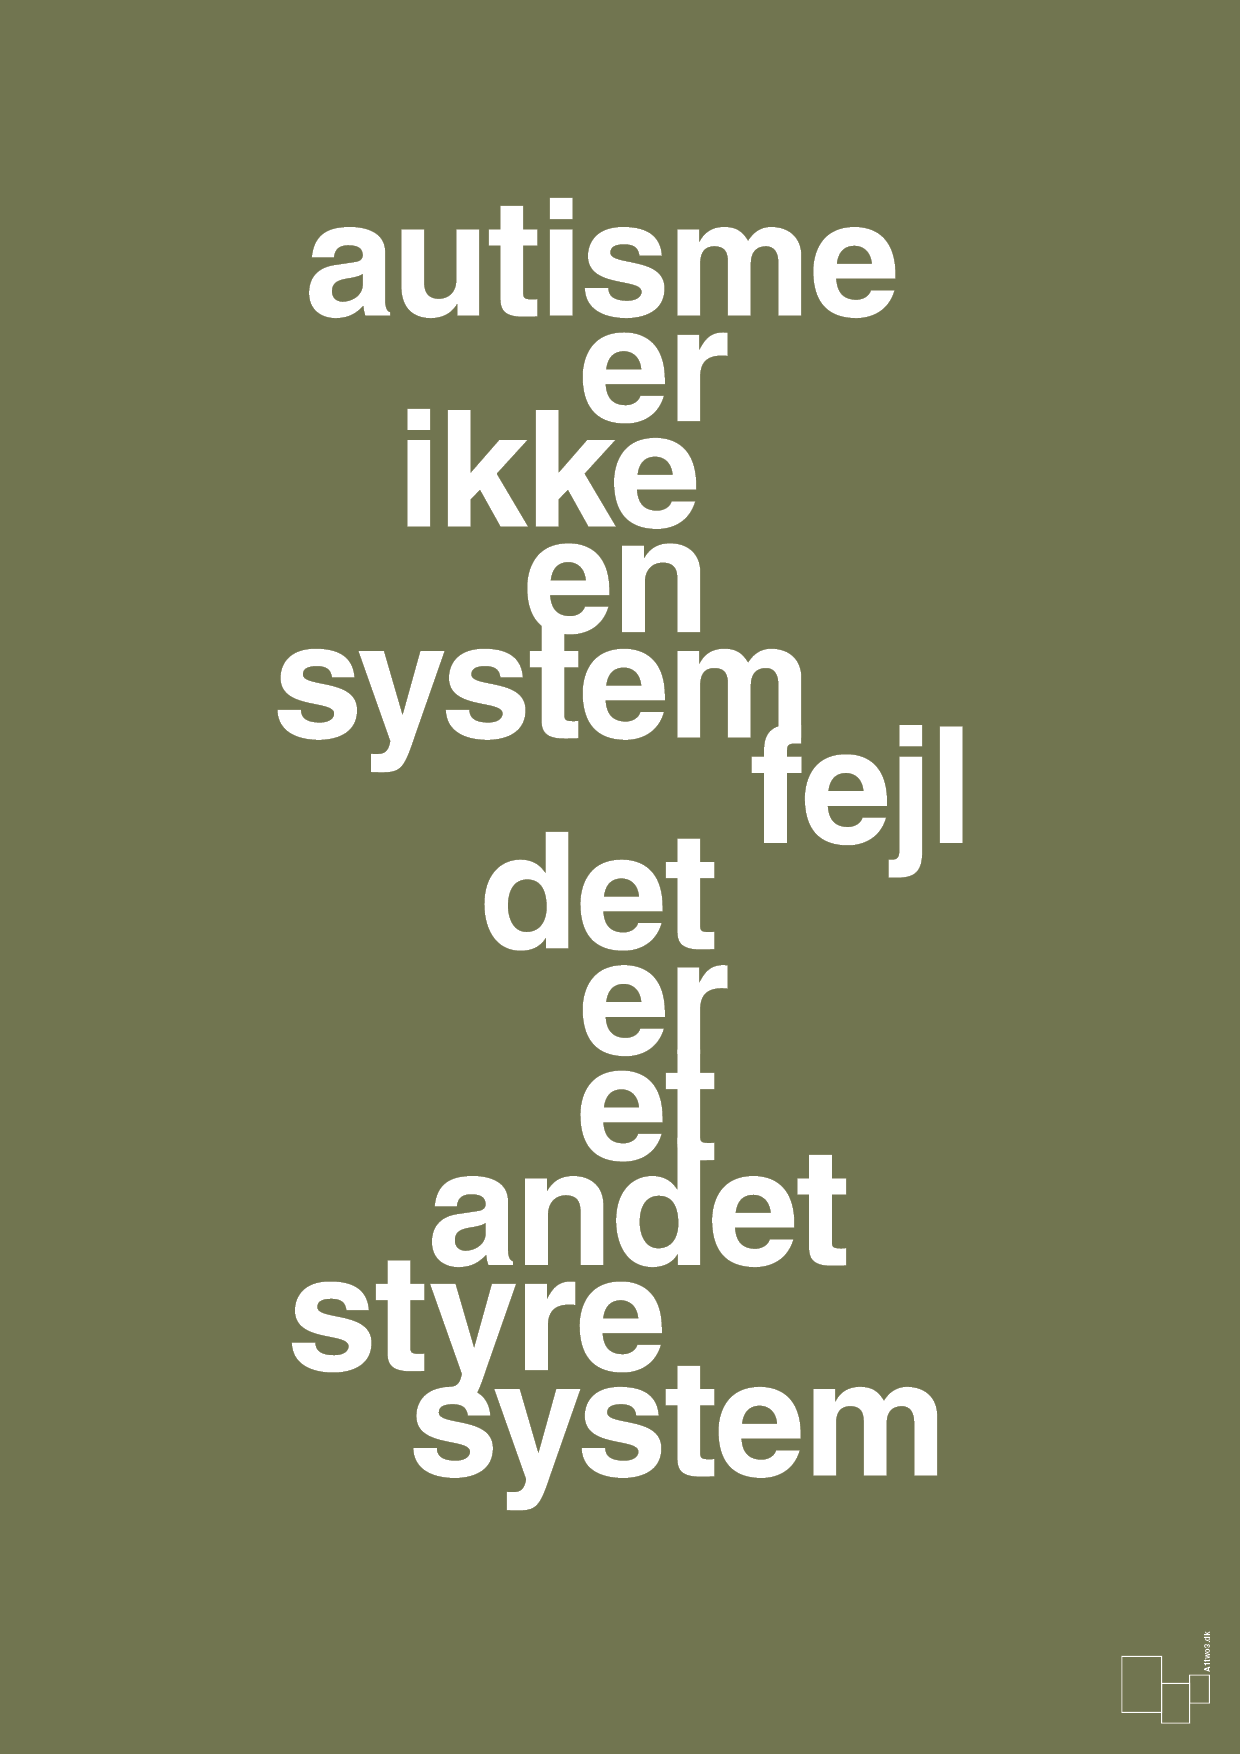 autisme er ikke en systemfejl - Plakat med Samfund i Secret Meadow